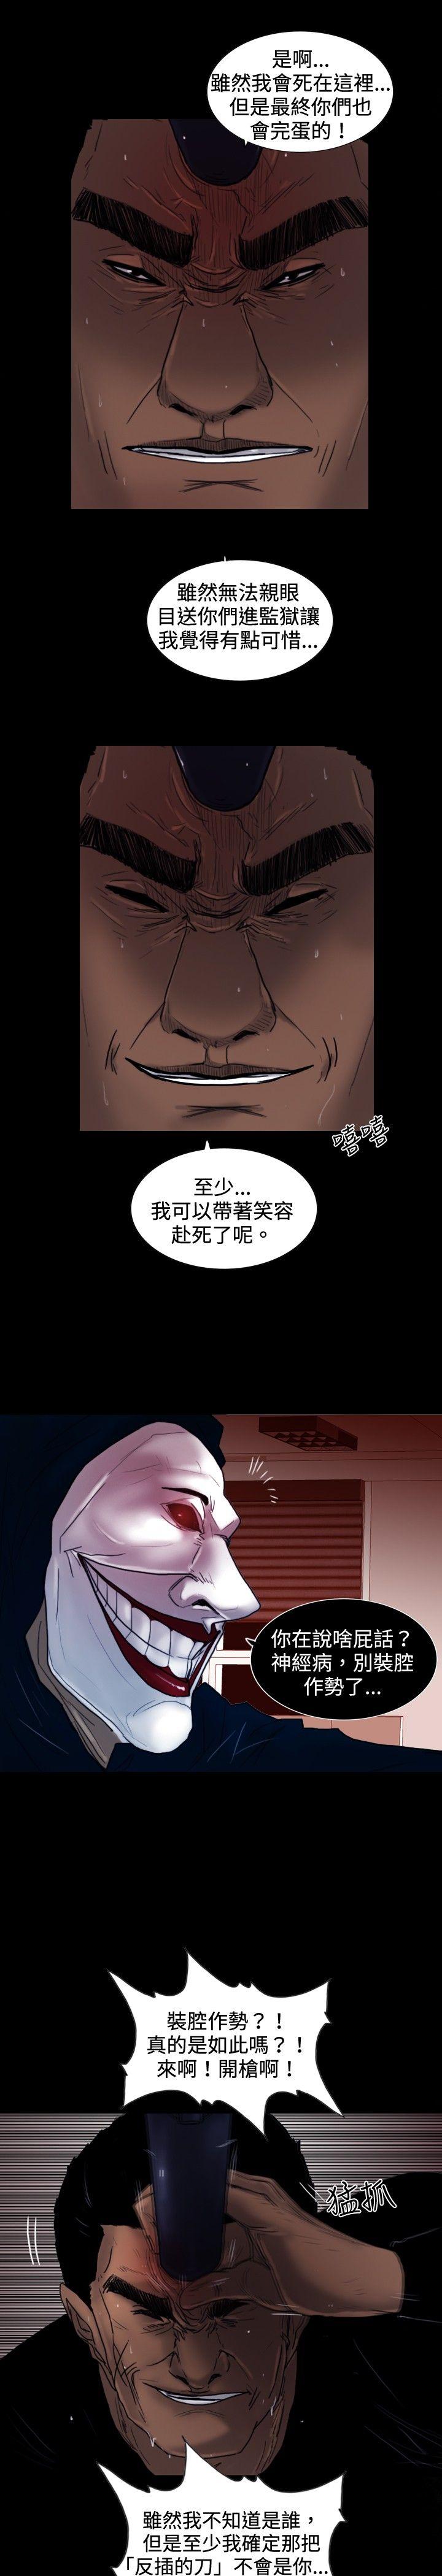 韩国污漫画 覺醒(完結) 第26话垃圾 26